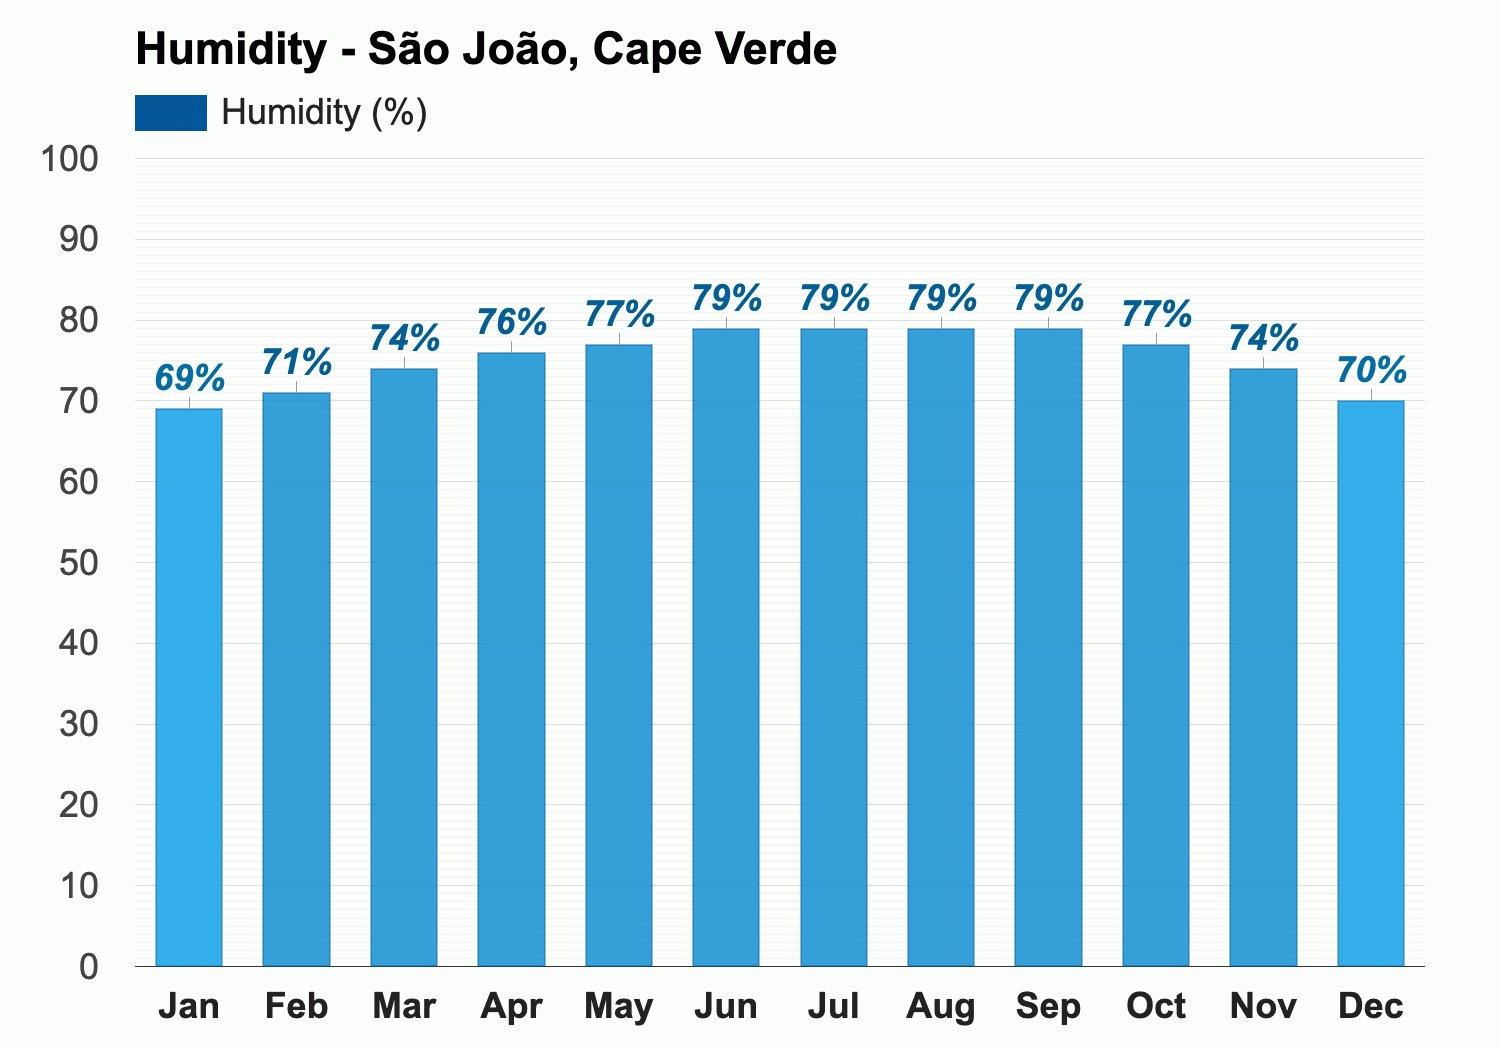 São João, Cape Verde - March weather forecast and climate information |  Weather Atlas